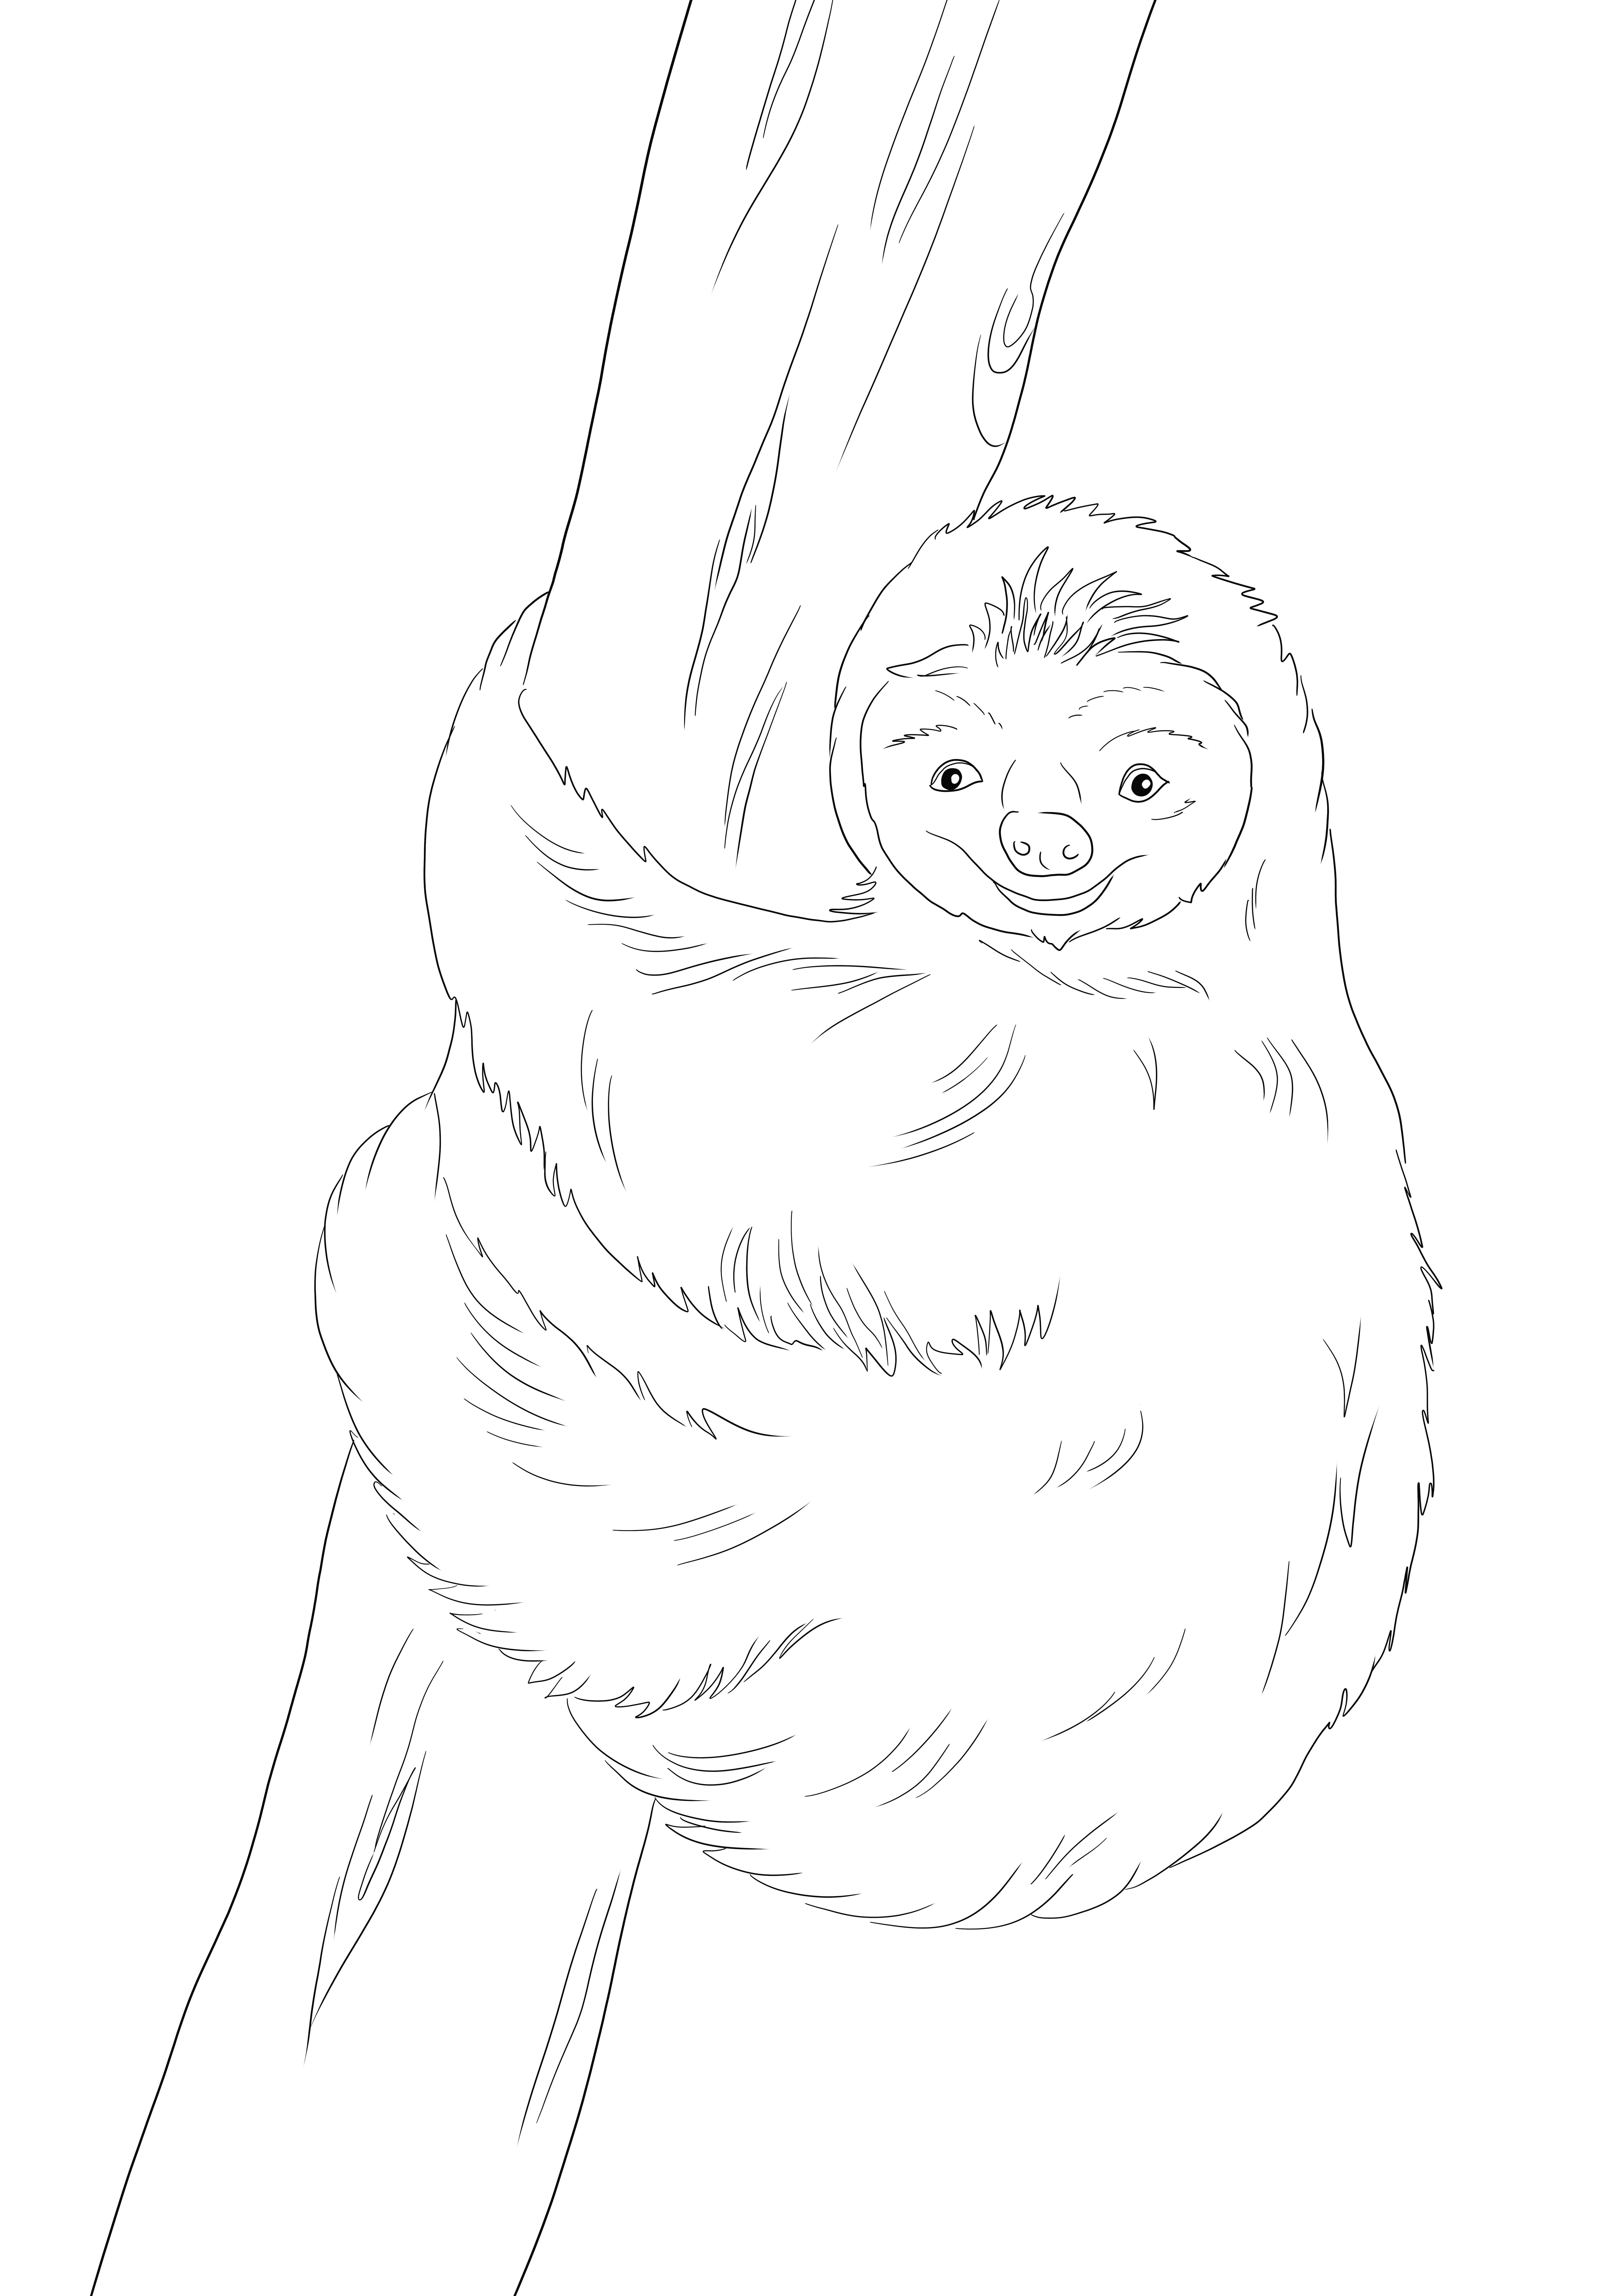 Słodki leniwiec wspinający się na drzewo do wydrukowania i pokolorowania za darmo